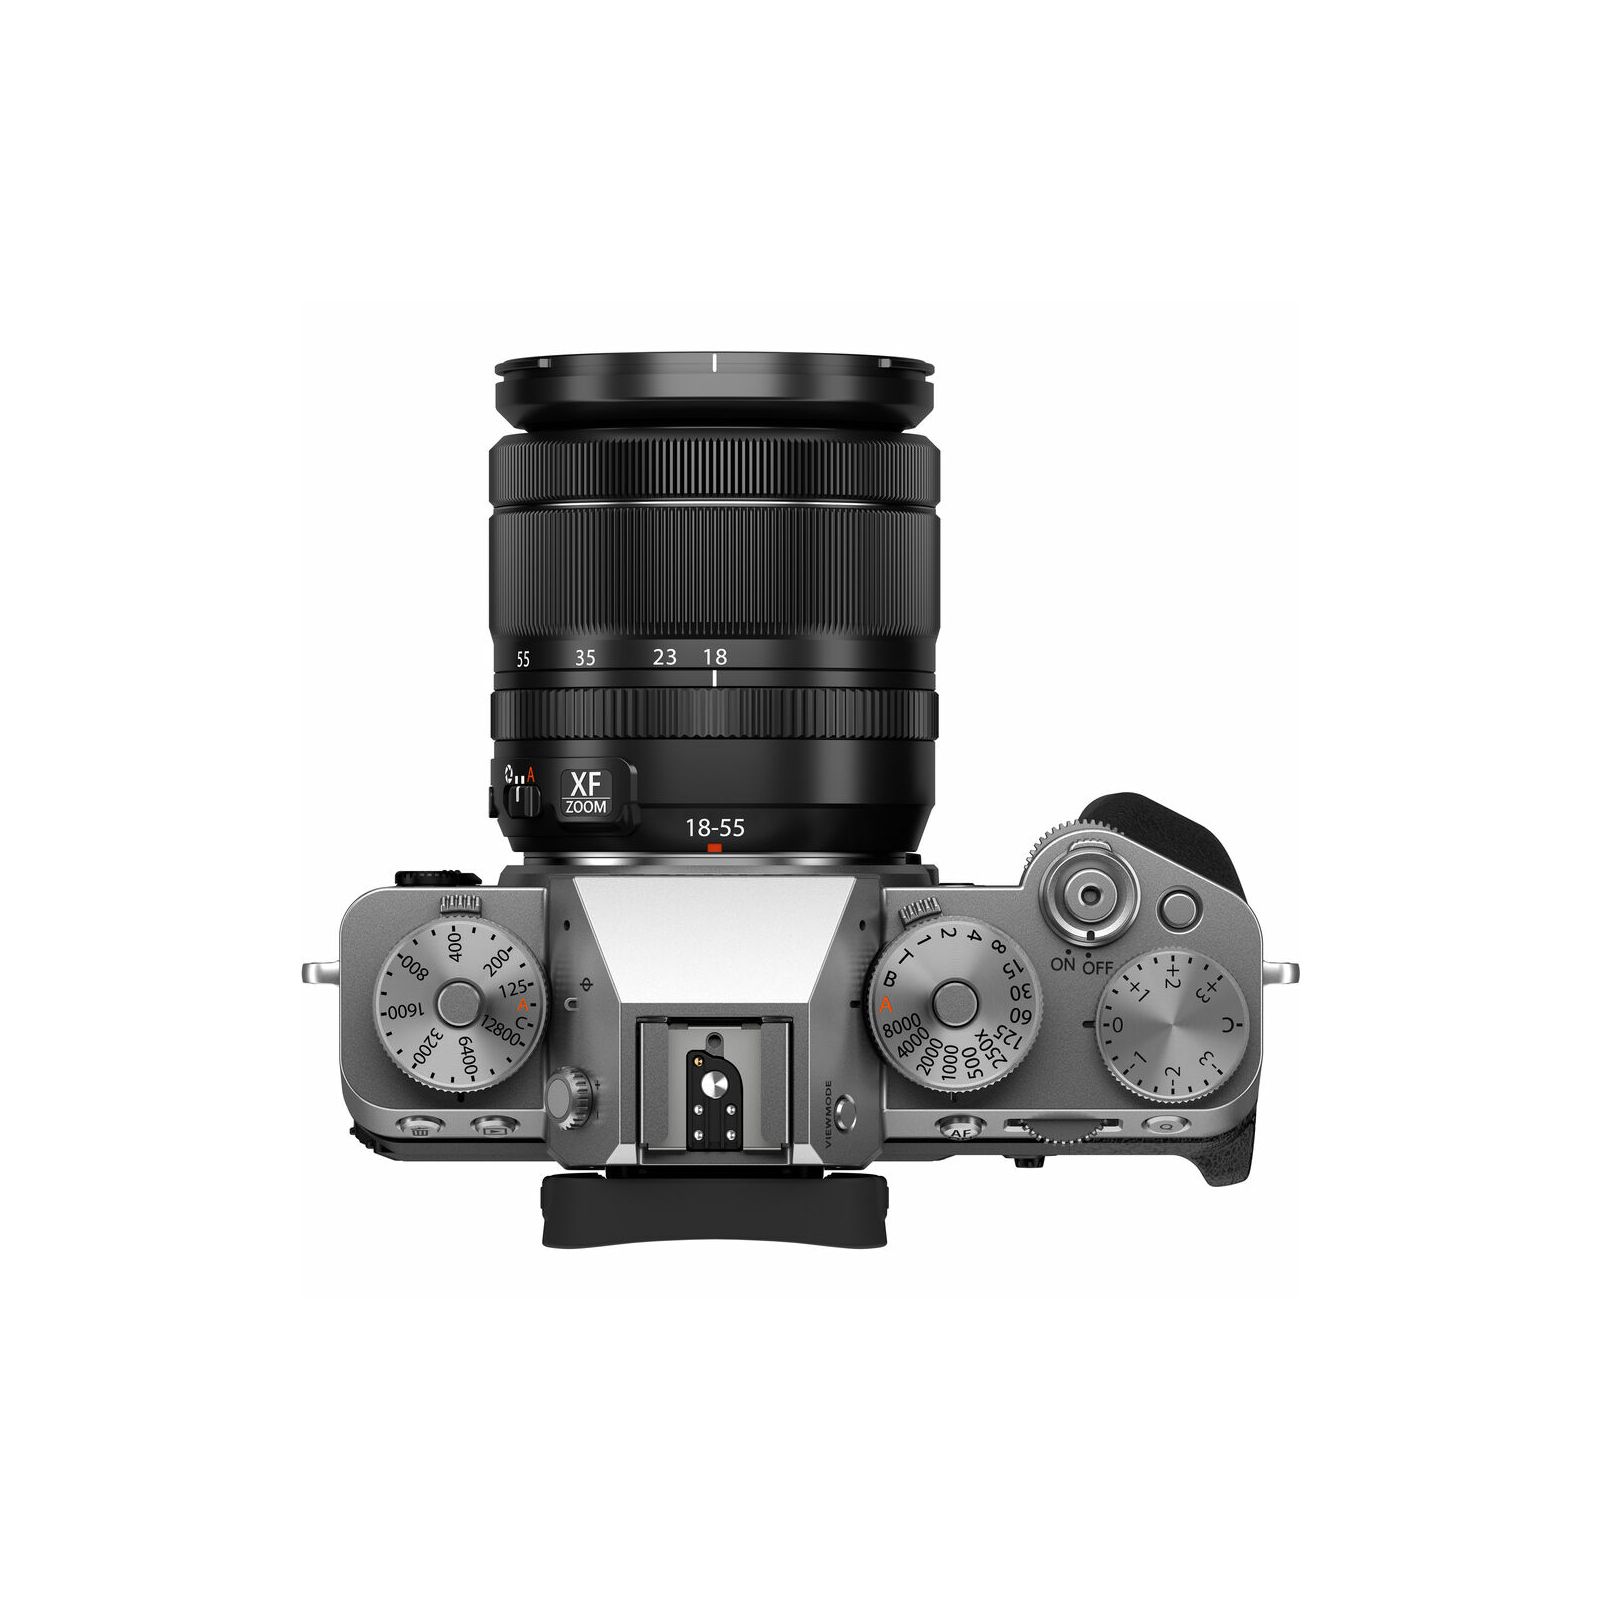 Fujifilm X-T5 + XF 18-55mm f/2.8-4 R LM OIS Silver srebreni Fuji digitalni mirrorless fotoaparat s objektivom